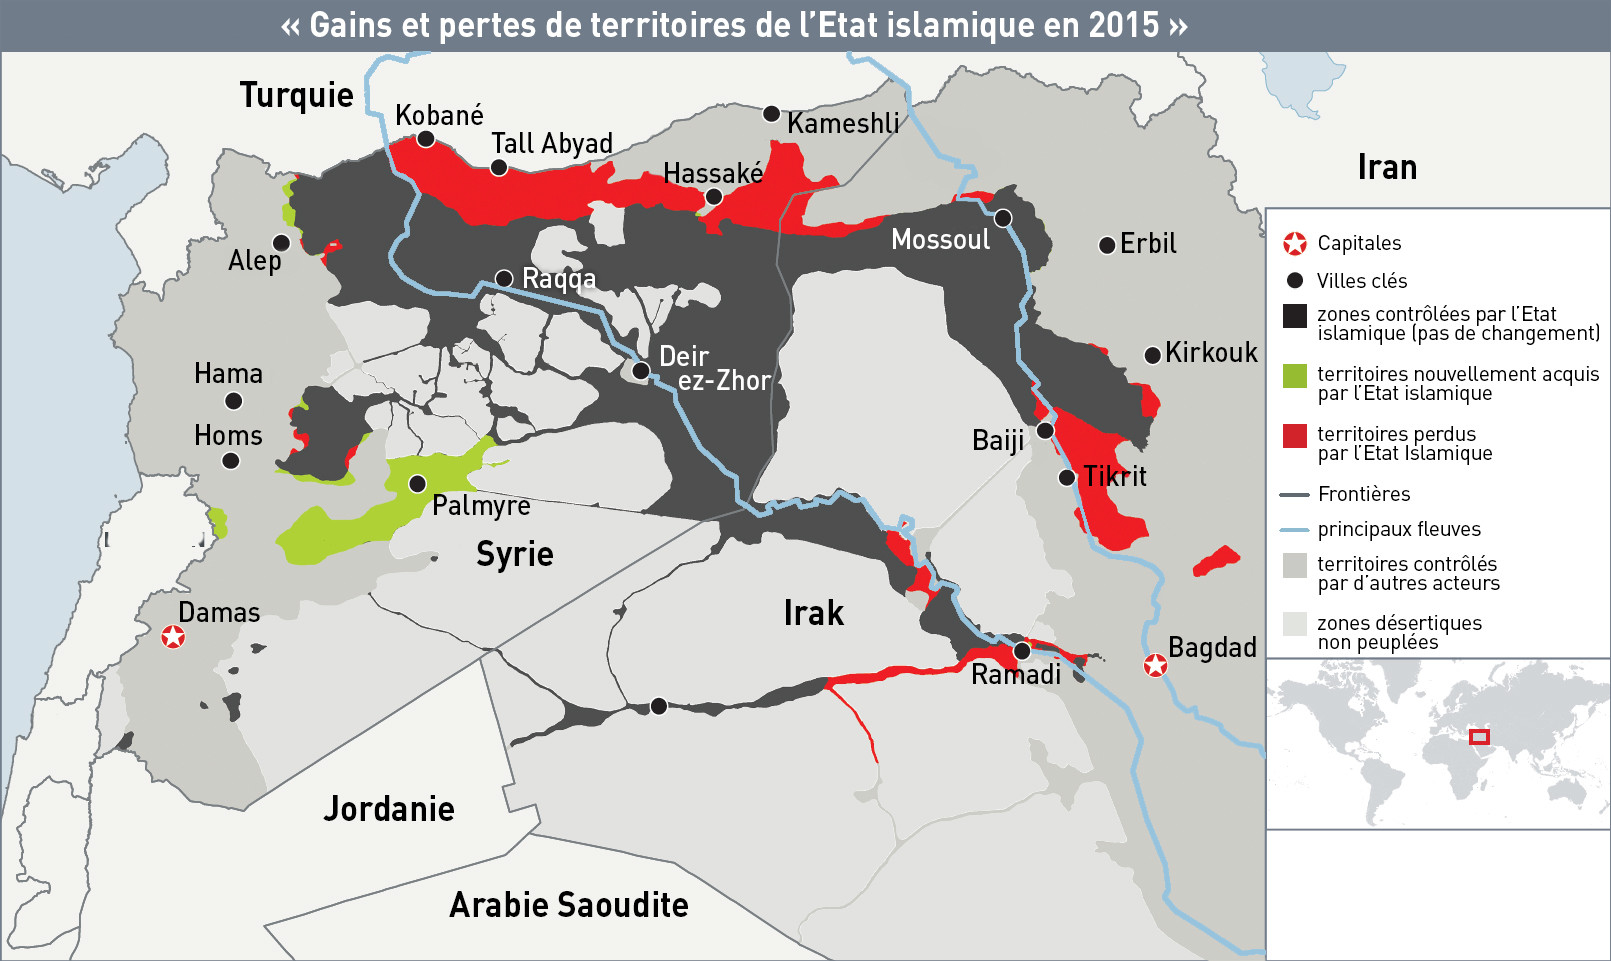 Irak, Afghanistan, Libye : le grand retour des insurrections...et des interventions